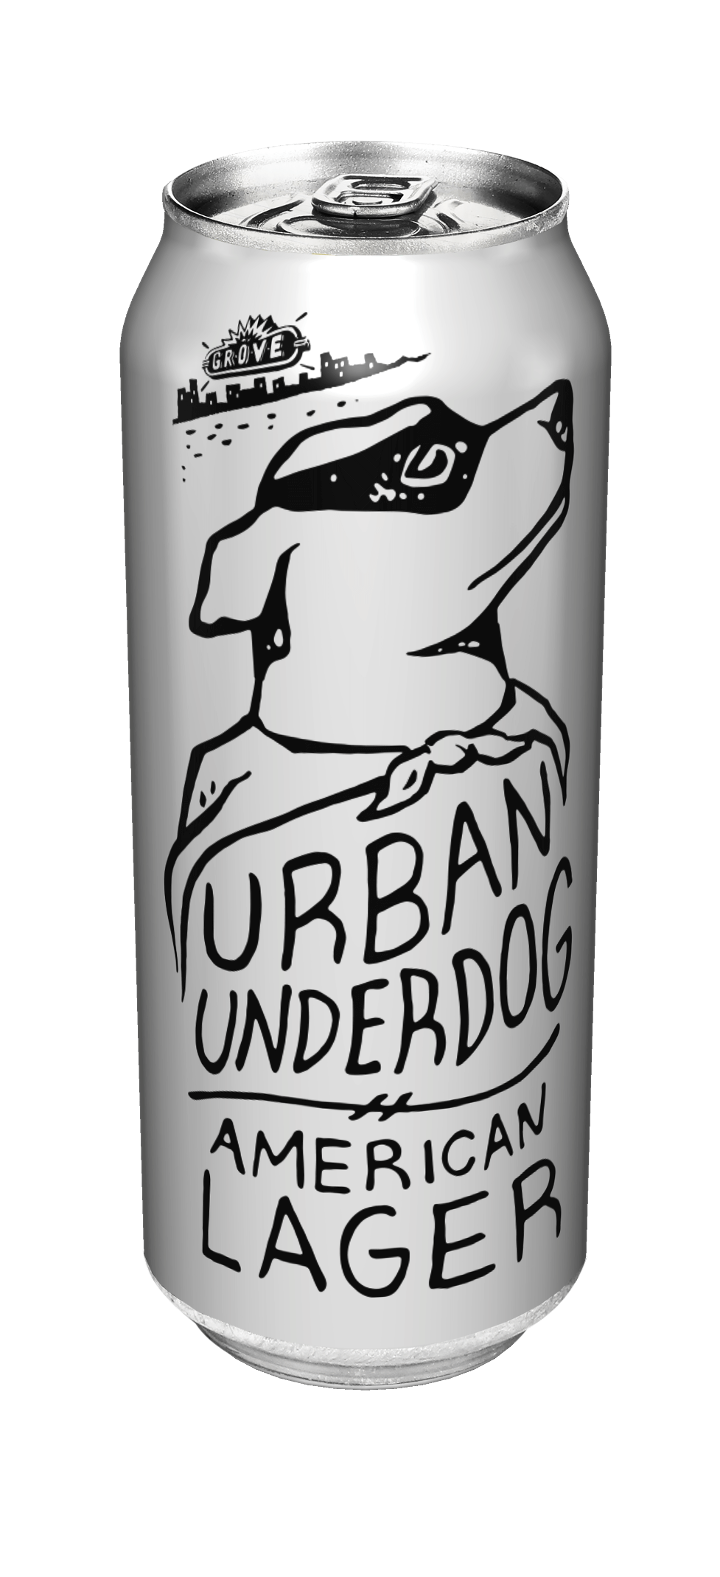 Urban Underdog Lager